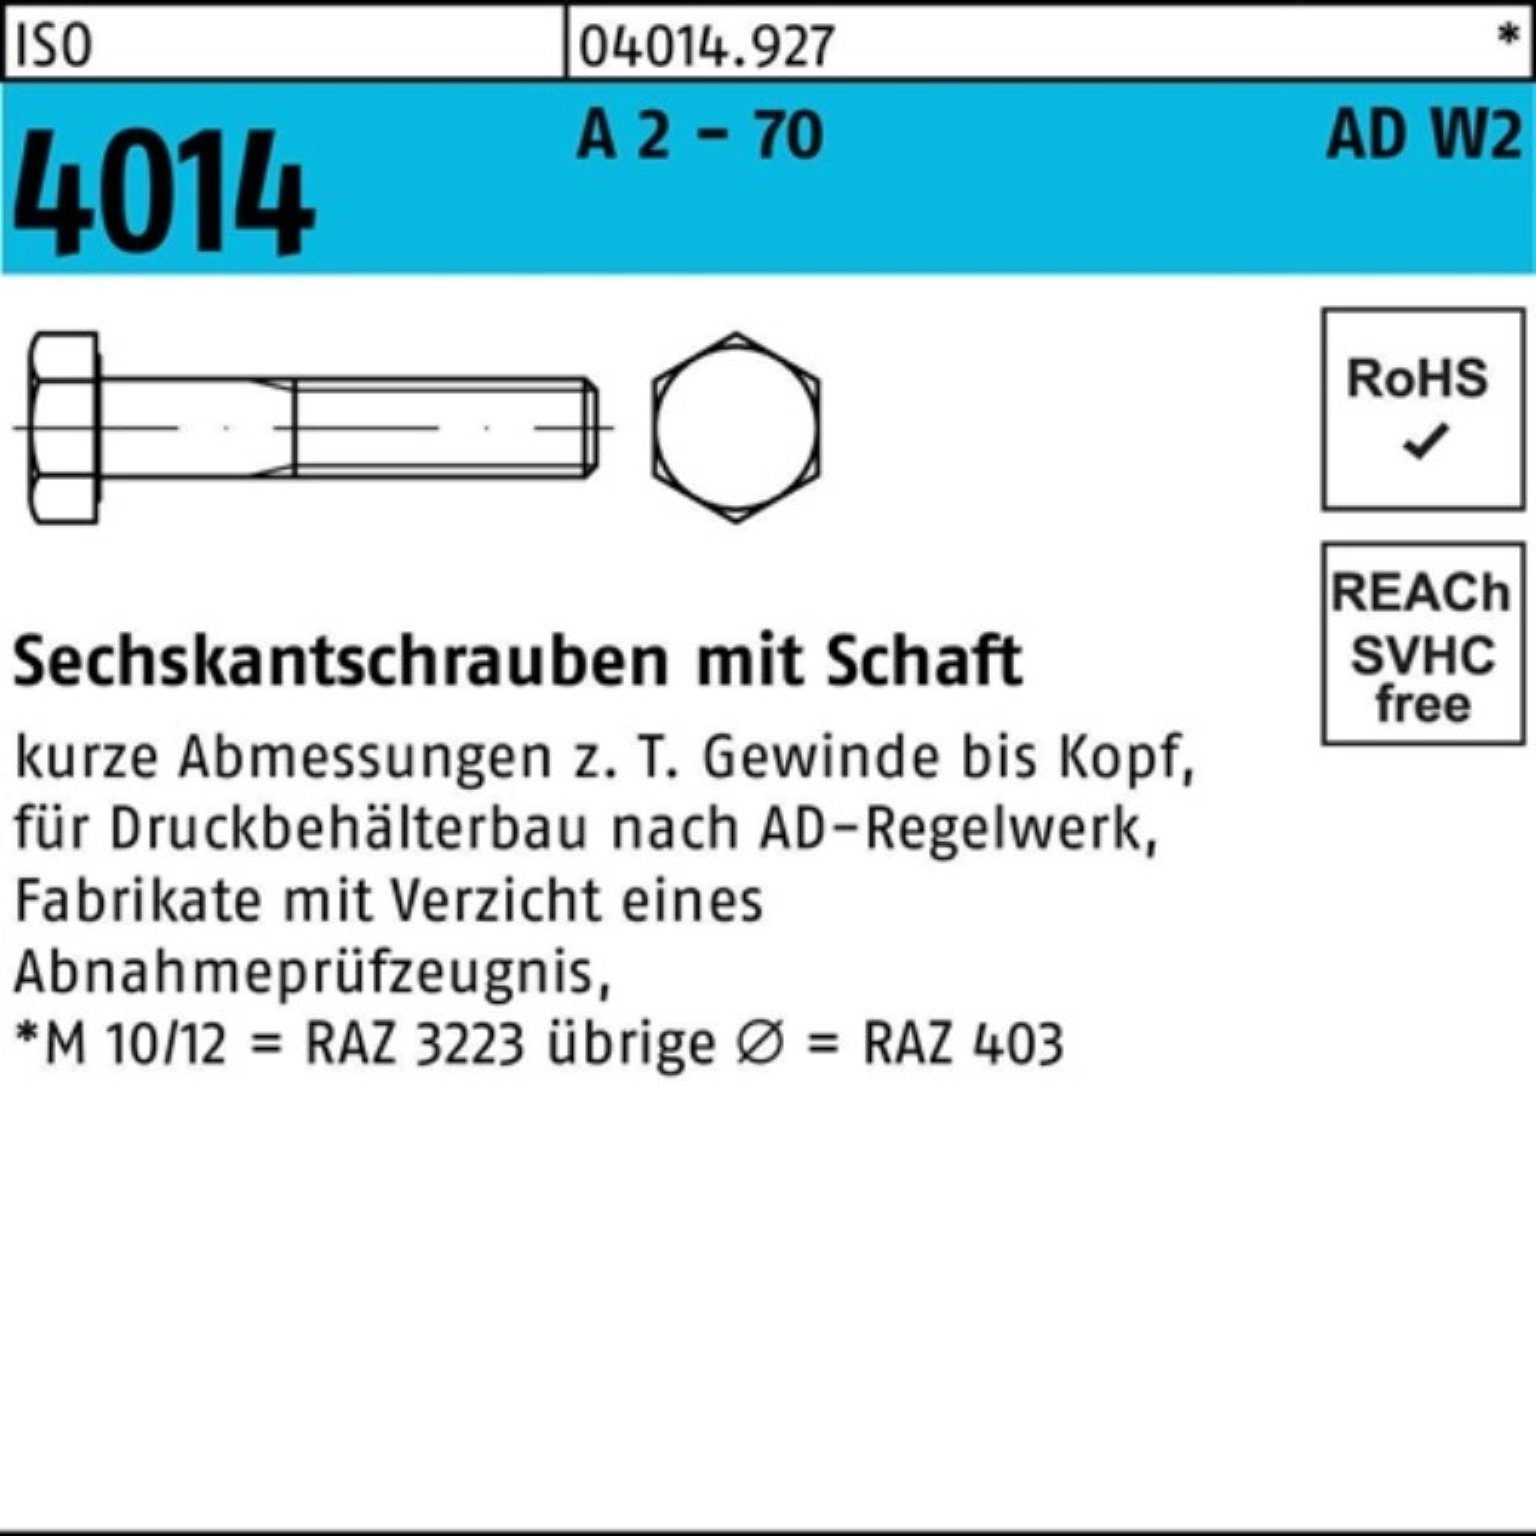 Bufab Sechskantschraube 100er Pack Sechskantschraube 4014 - 5 ISO 130 70 M10x A Schaft 2 AD-W2